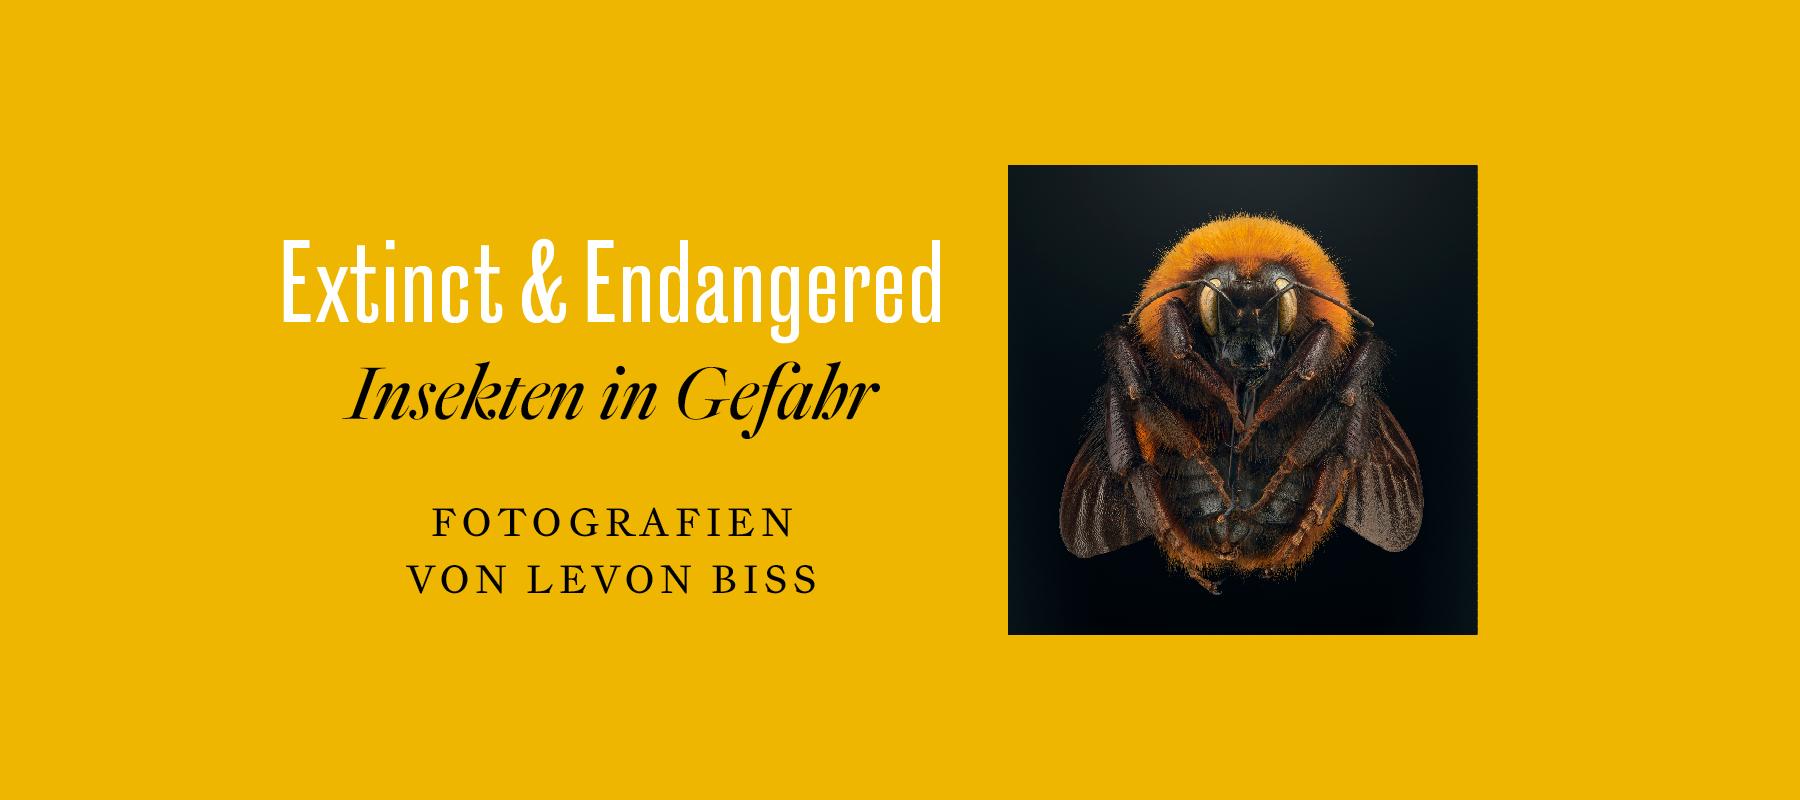 Foto-Ausstellung über bedrohte Insekten - Extinct & Endangered